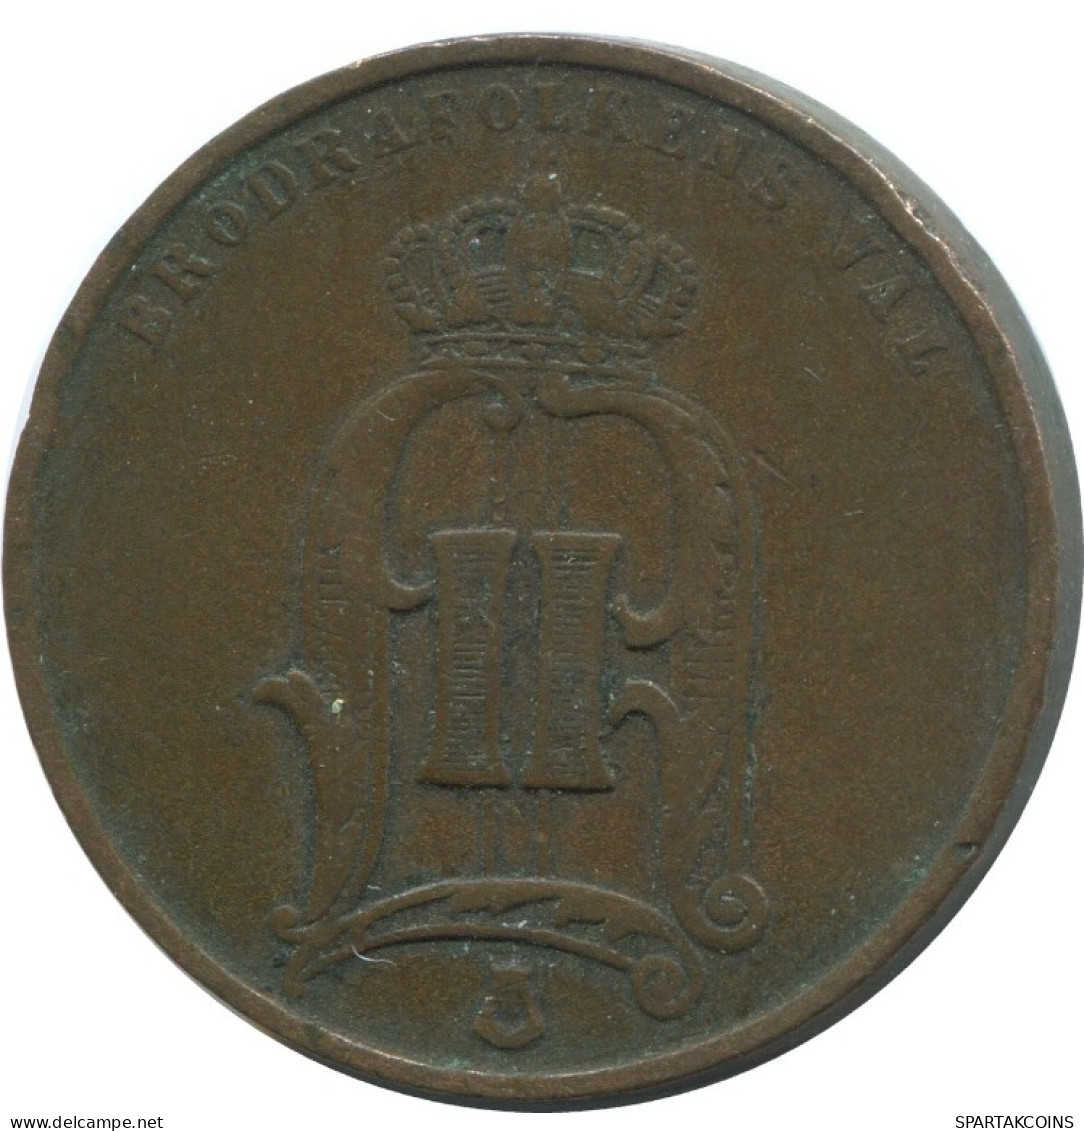 5 ORE 1874 SUECIA SWEDEN Moneda #AC573.2.E.A - Suecia